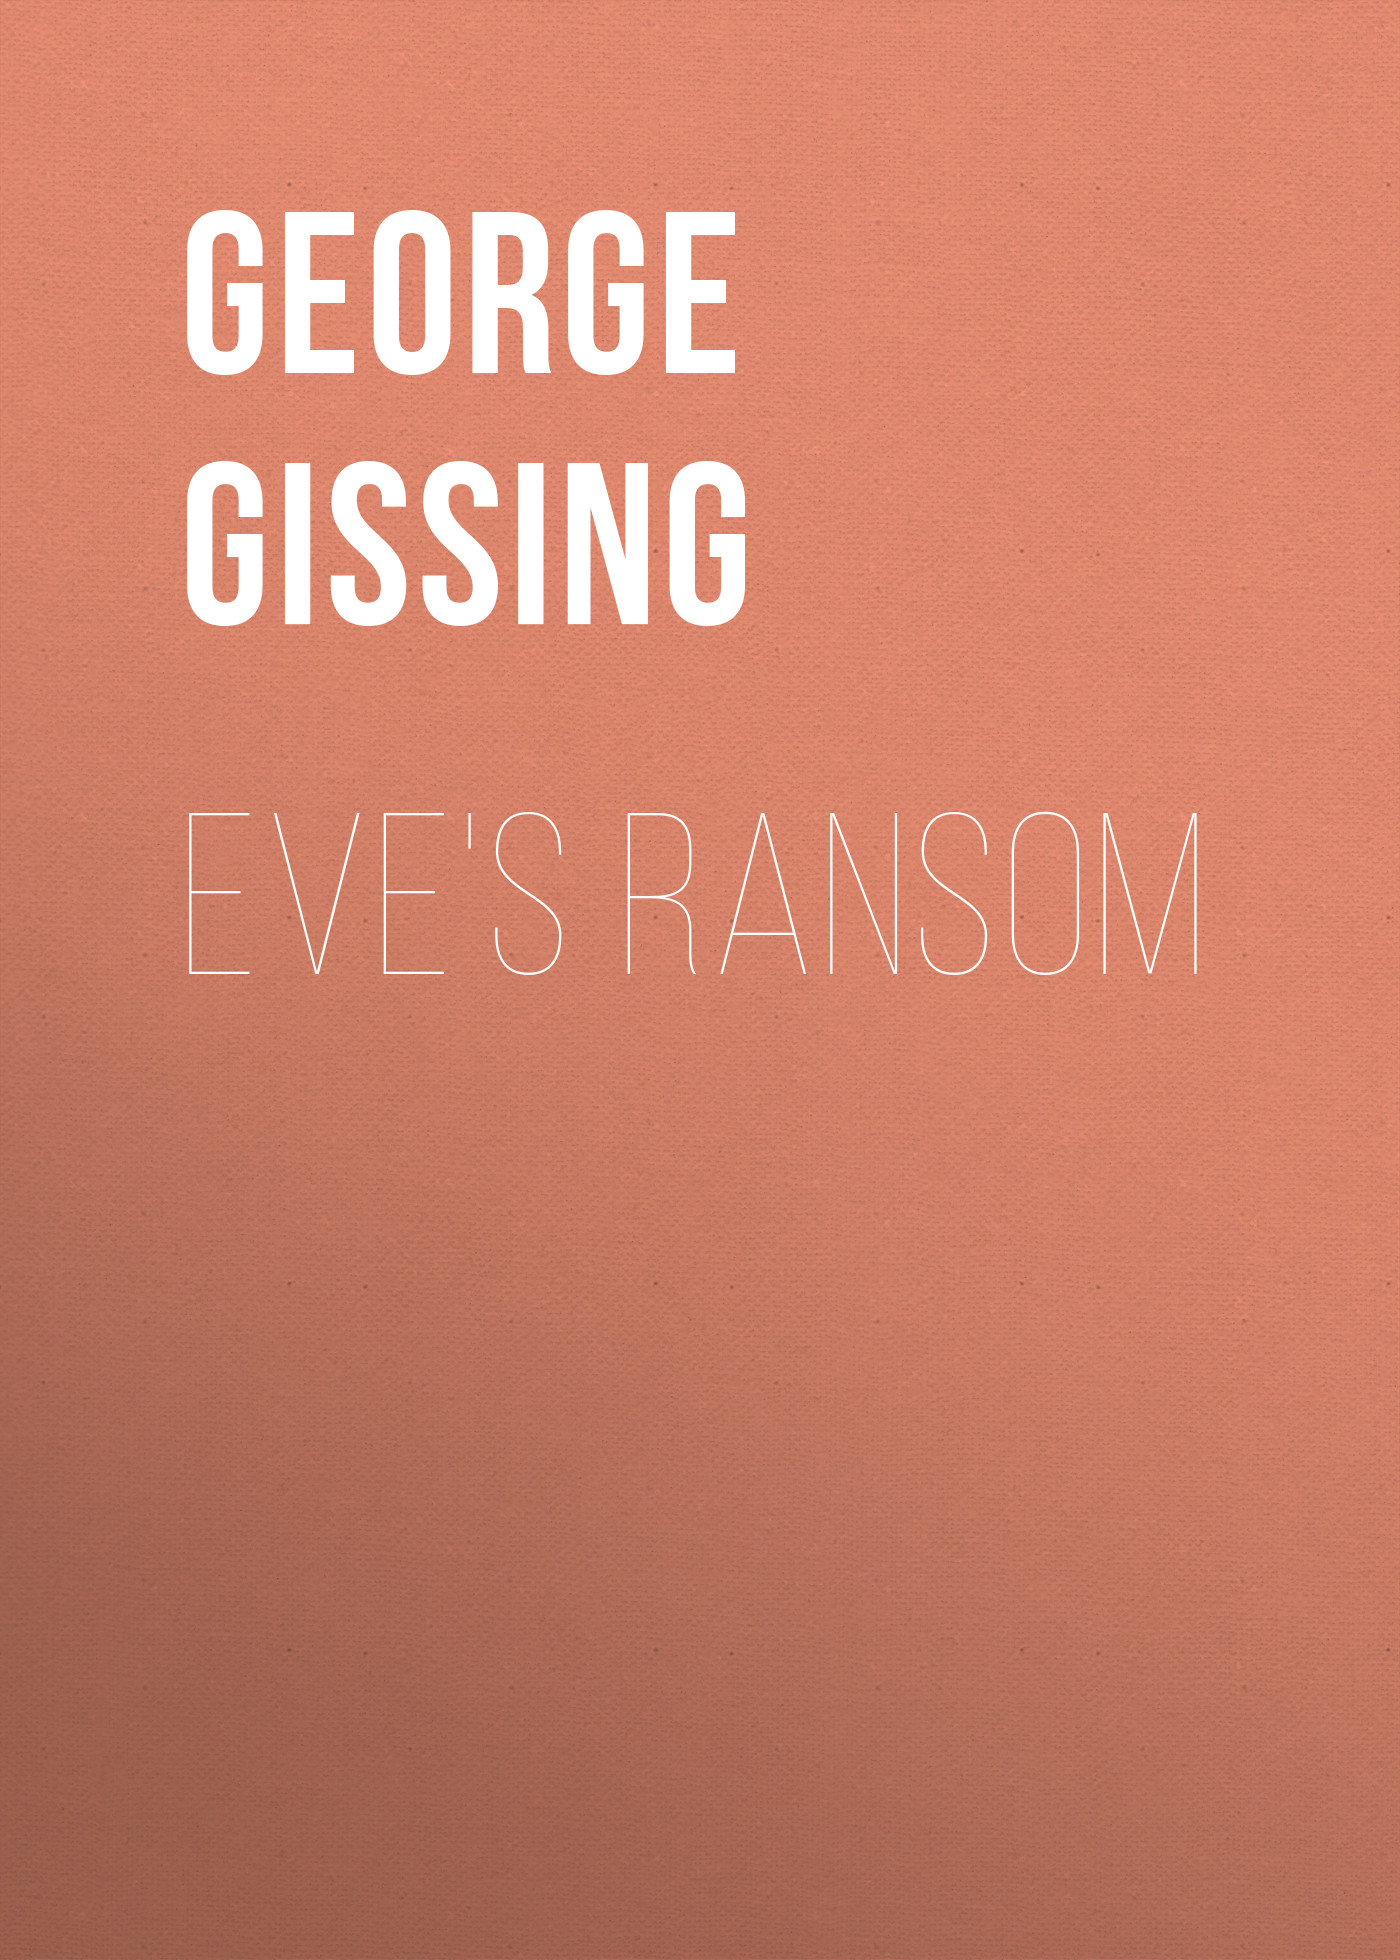 Книга Eve's Ransom из серии , созданная George Gissing, может относится к жанру Зарубежная классика, Литература 19 века, Зарубежная старинная литература. Стоимость электронной книги Eve's Ransom с идентификатором 38306865 составляет 0 руб.